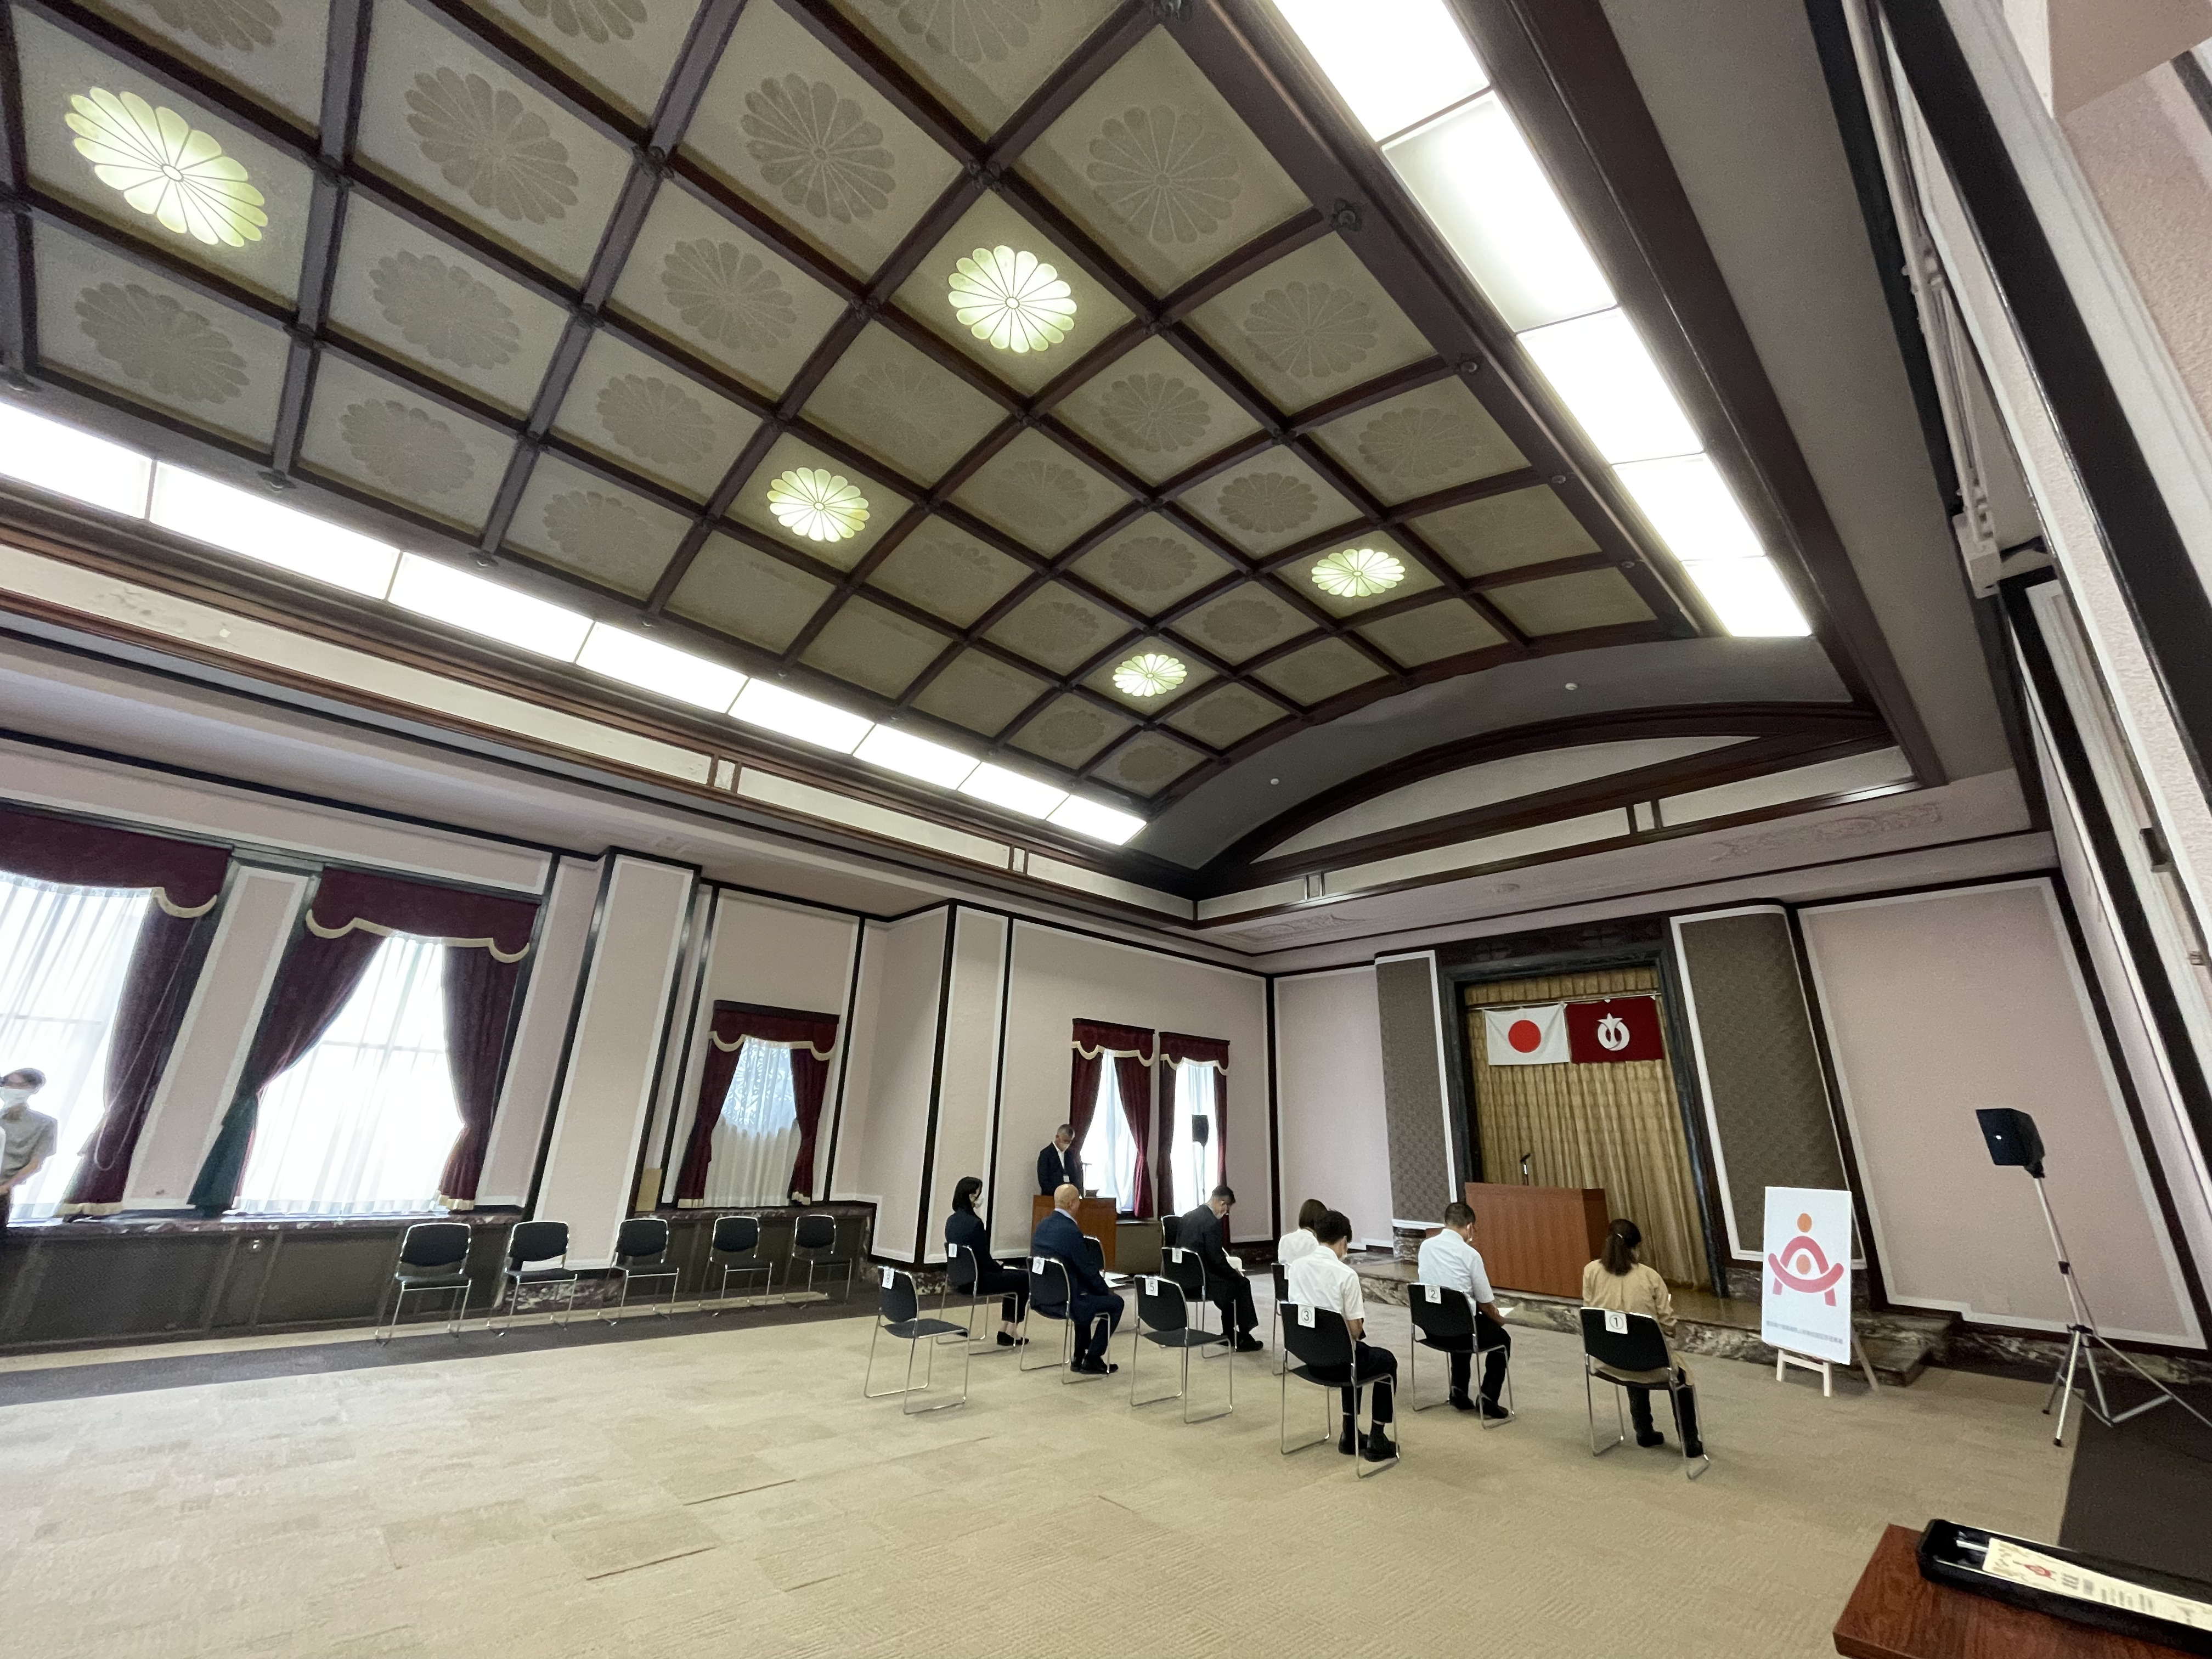 愛知県庁の「正庁」に初めて入室しました。正庁とは「正面の大広間・表座敷」という意味も初めて知りました。アーチ型の格天井や装飾飾りなどが創建当時（昭和13年）のまま残っているそうです。